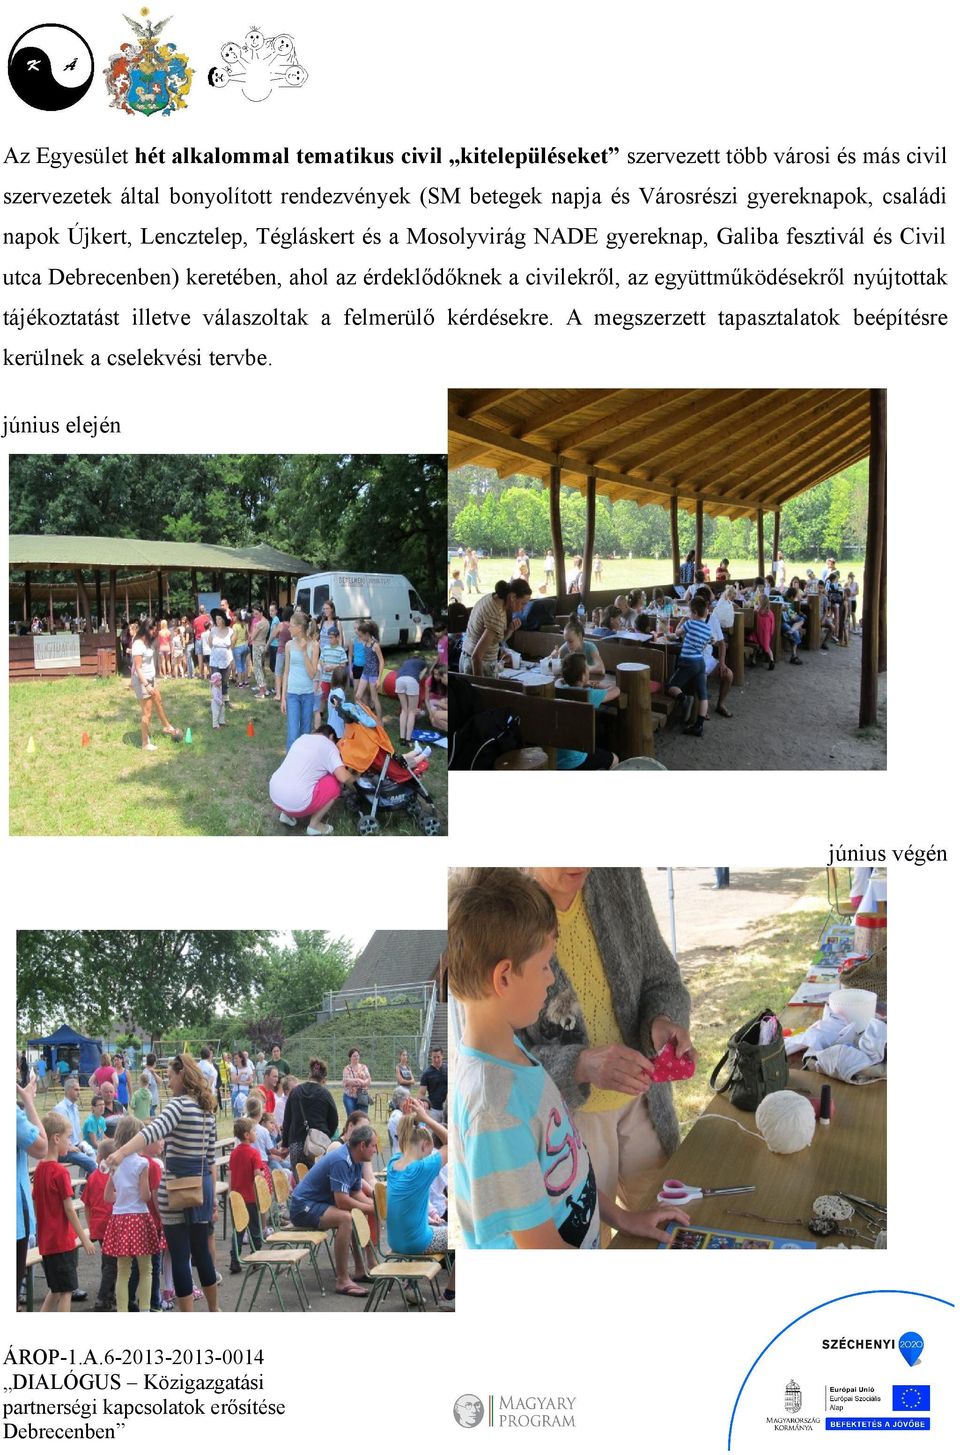 gyereknap, Galiba fesztivál és Civil utca Debrecenben) keretében, ahol az érdeklődőknek a civilekről, az együttműködésekről nyújtottak